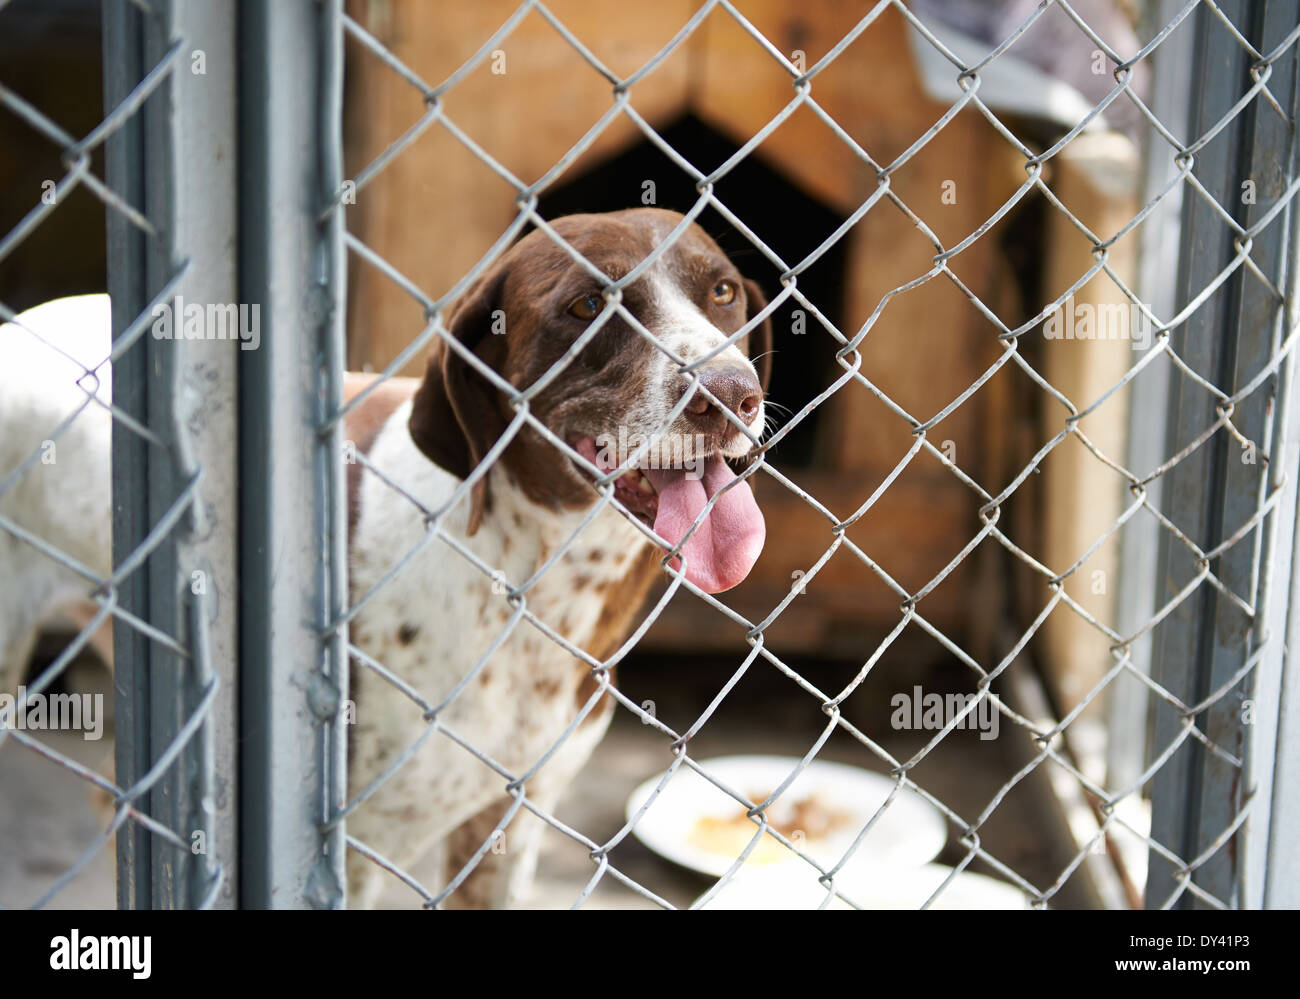 Les chiens dans une cage avec sa langue hanging out Banque D'Images